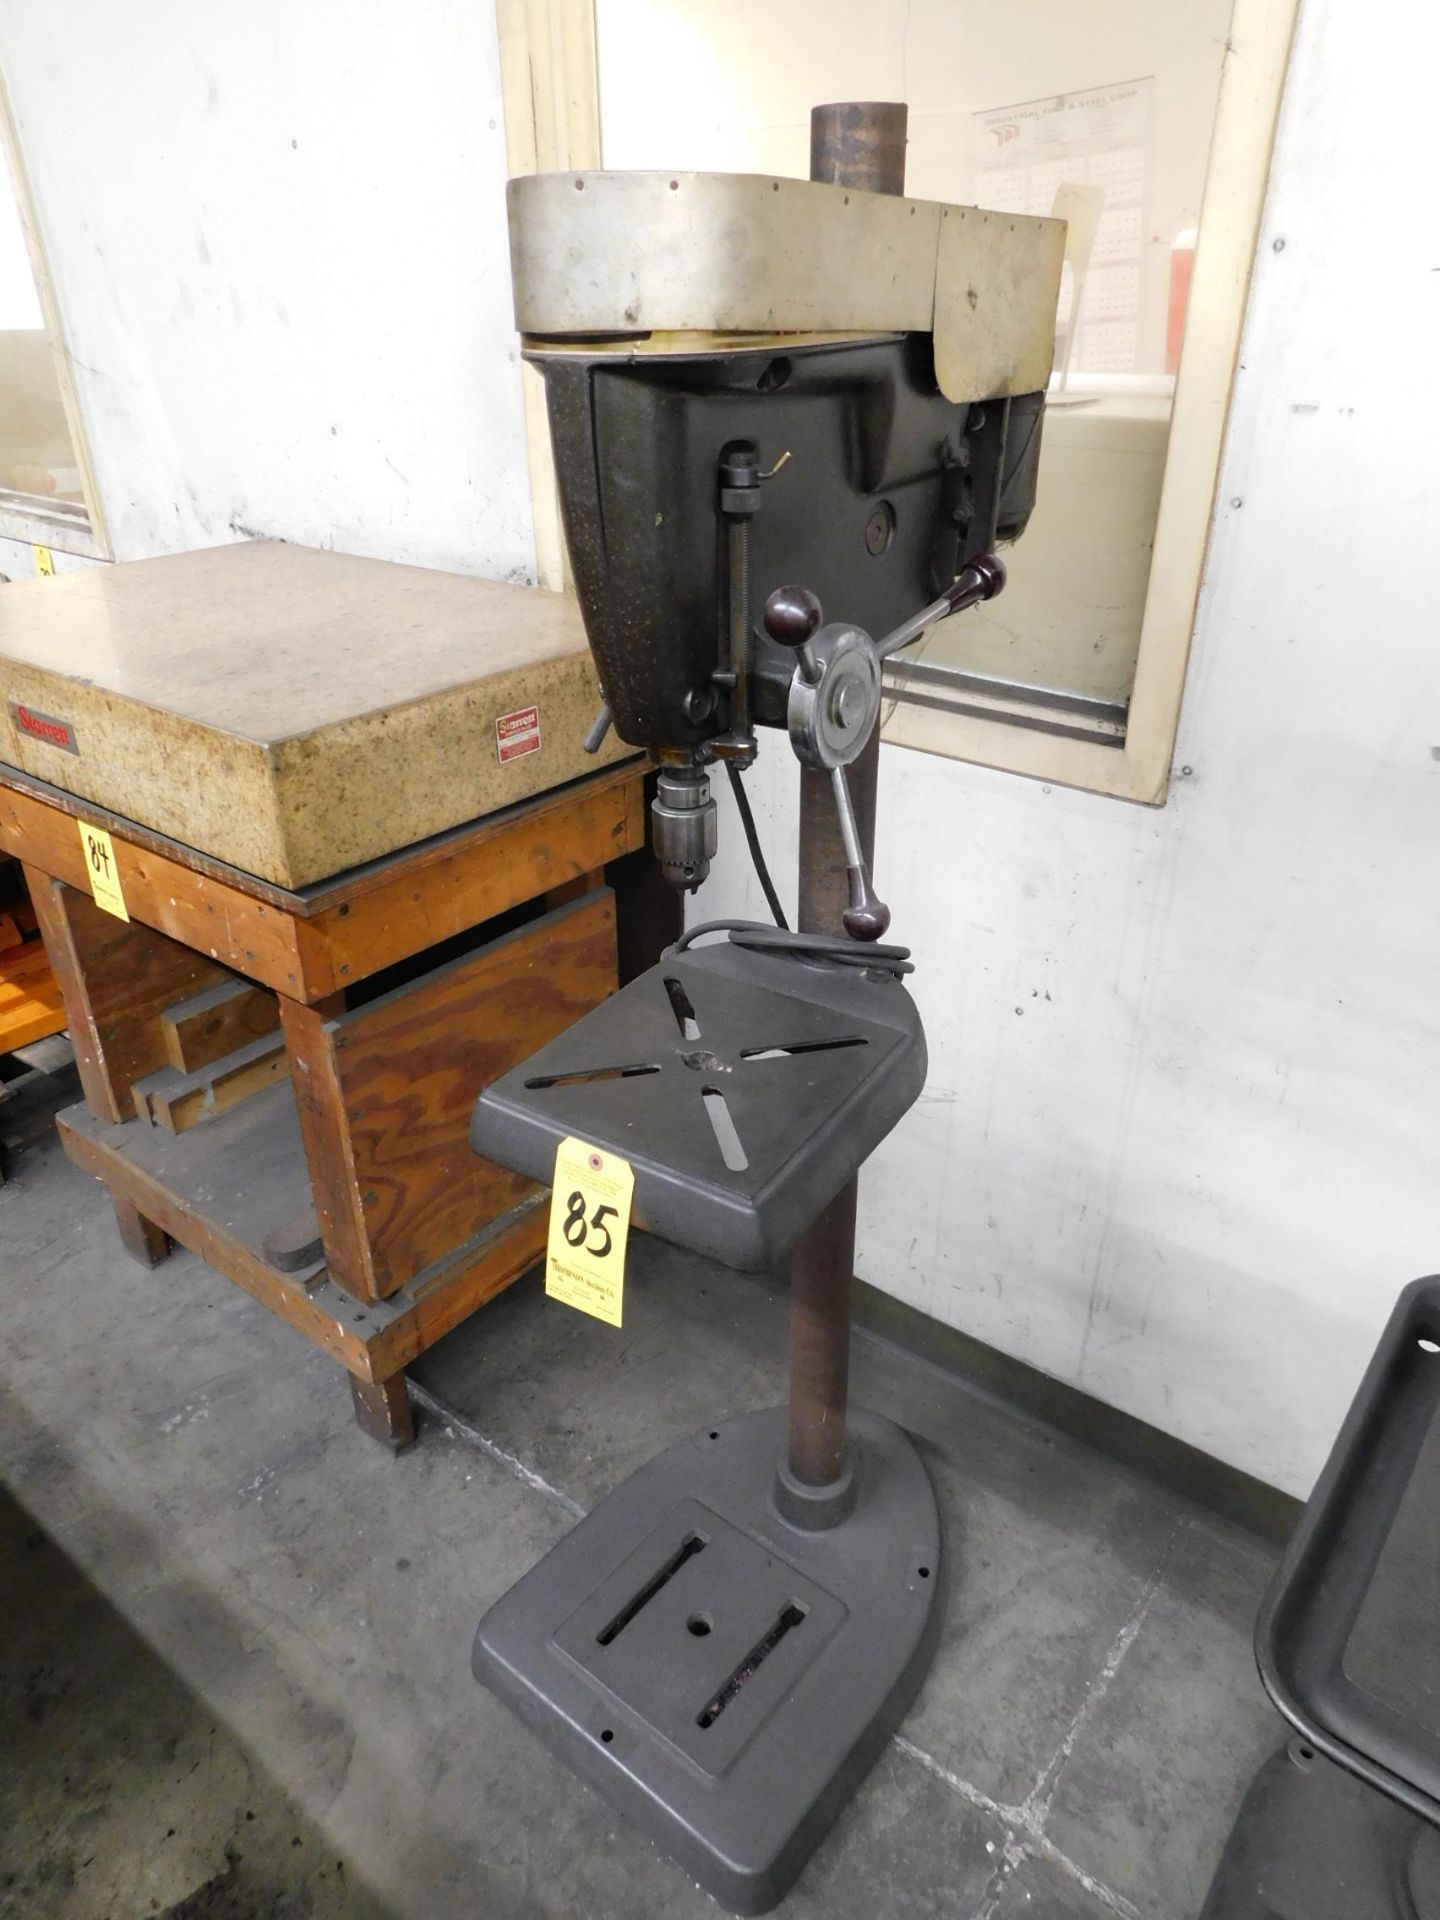 15" Floor Model Drill Press, 110/1/60